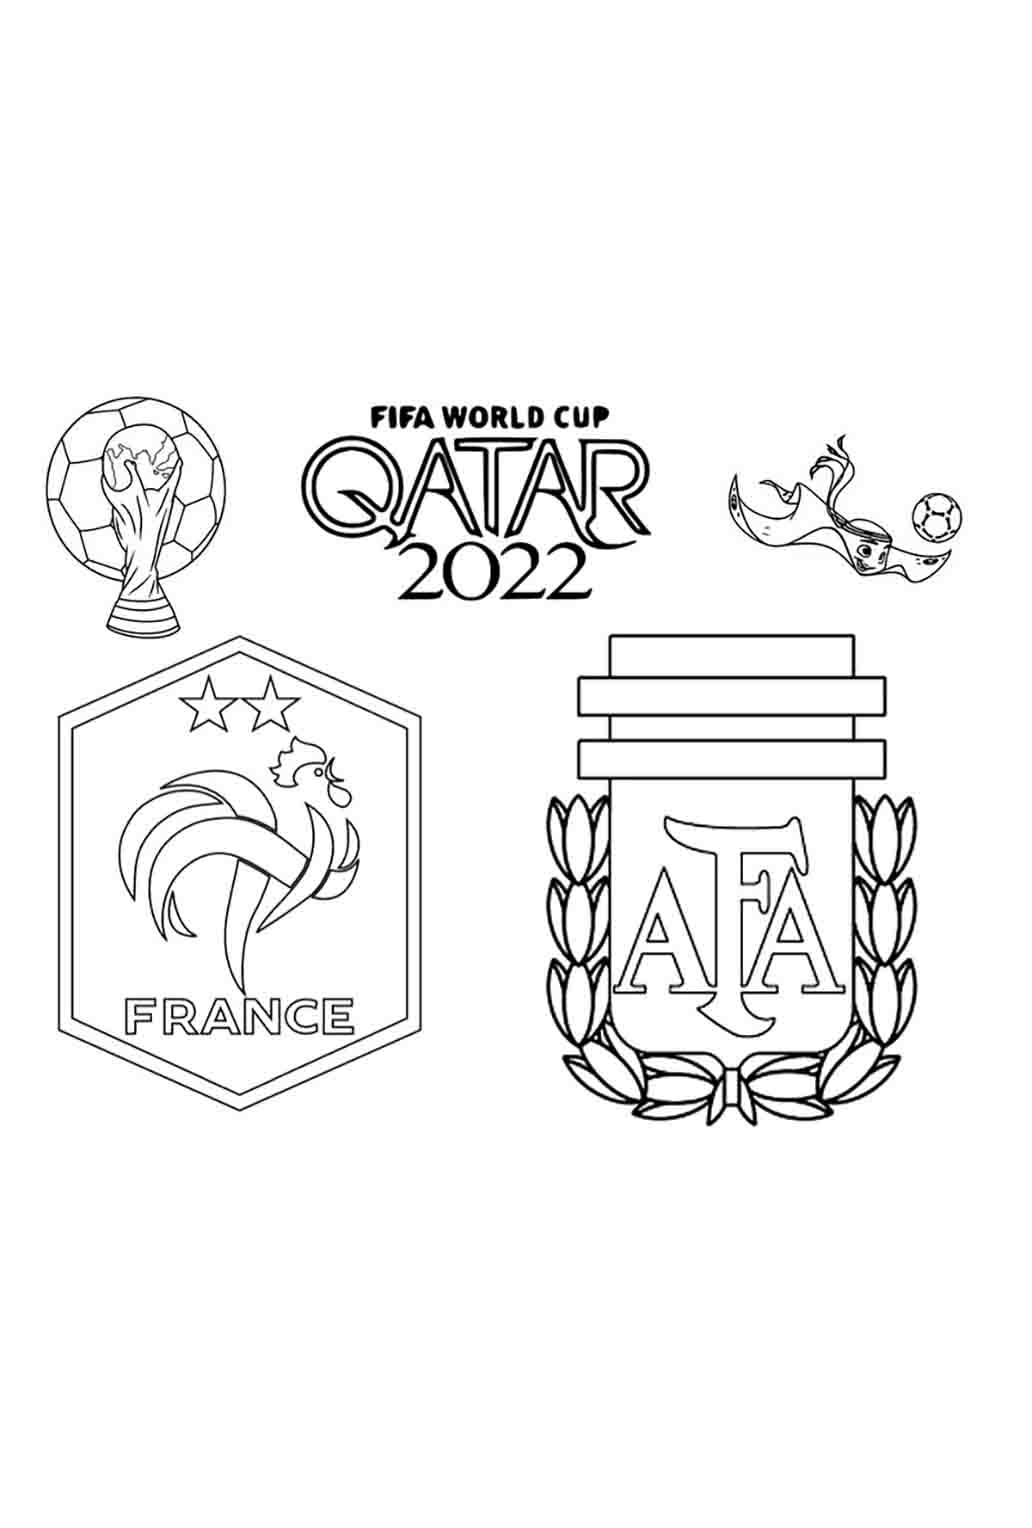 Аргентина Франция Финал Чемпионата Мира 2022 Катар